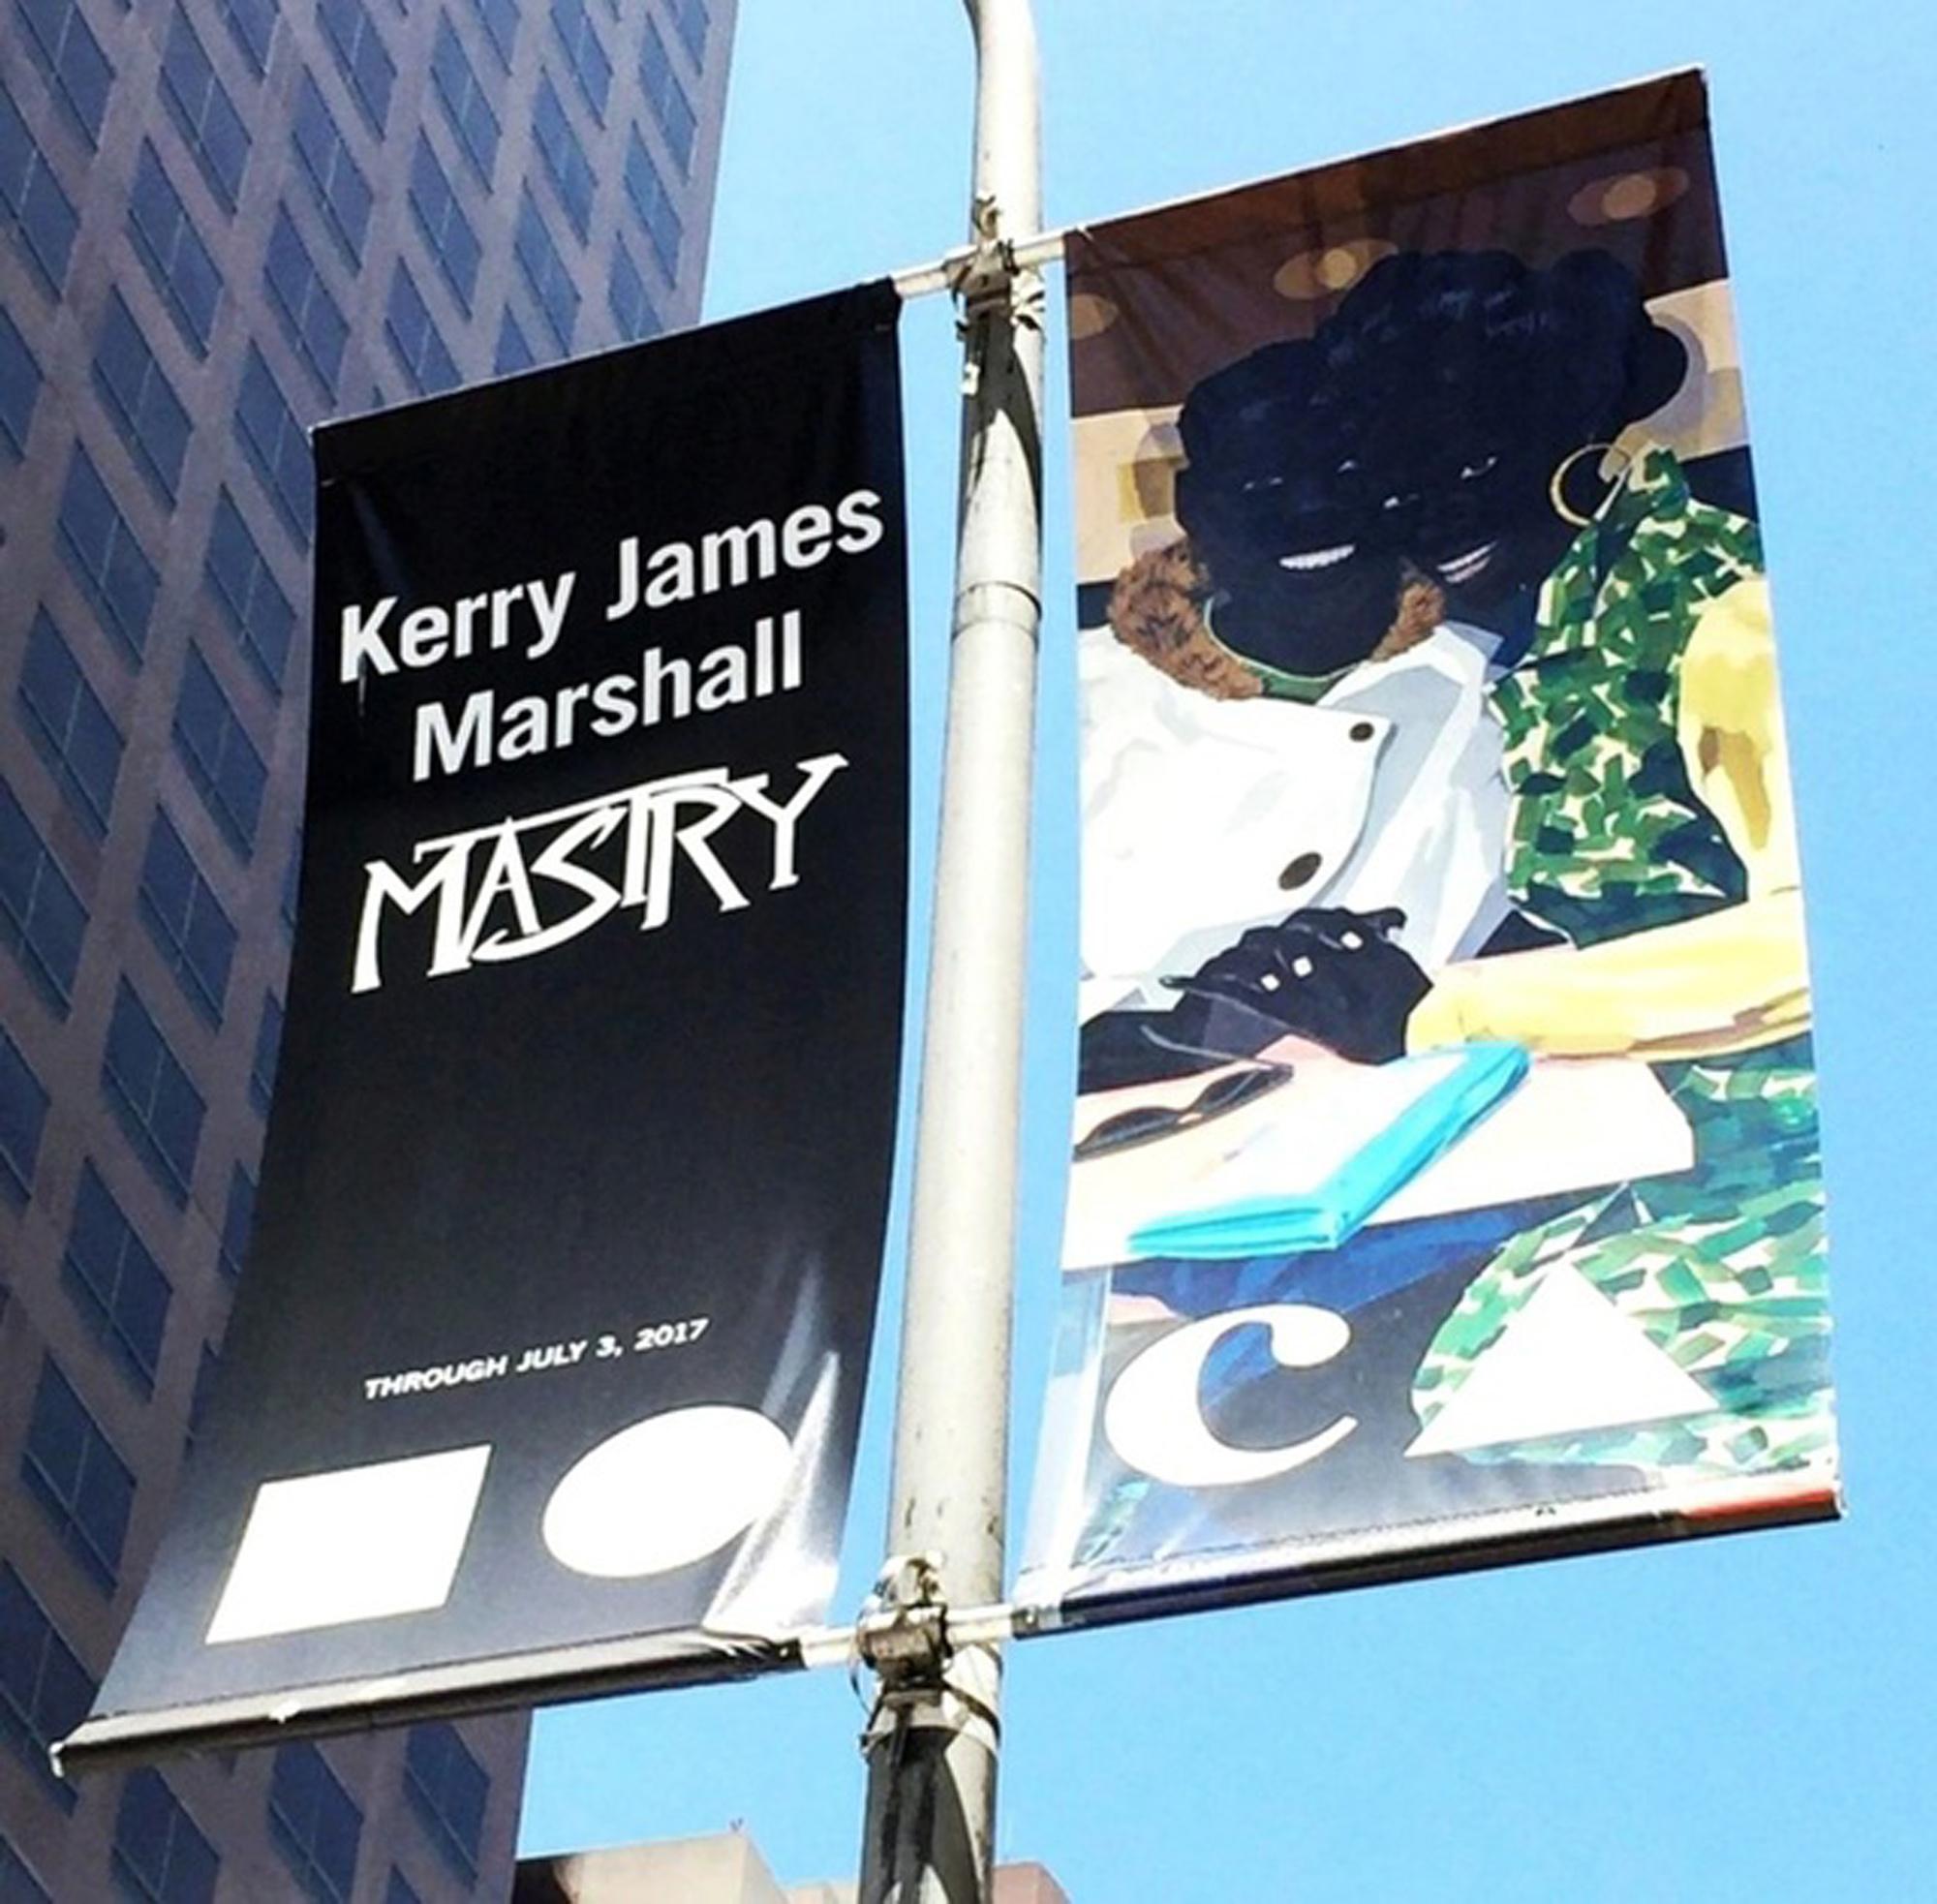 Bannière vinyle double face réalisée en 2017 à l'occasion de l'exposition Kerry James Marshall : Mastry au MOCA du 12 mars au 3 juillet 2017.
